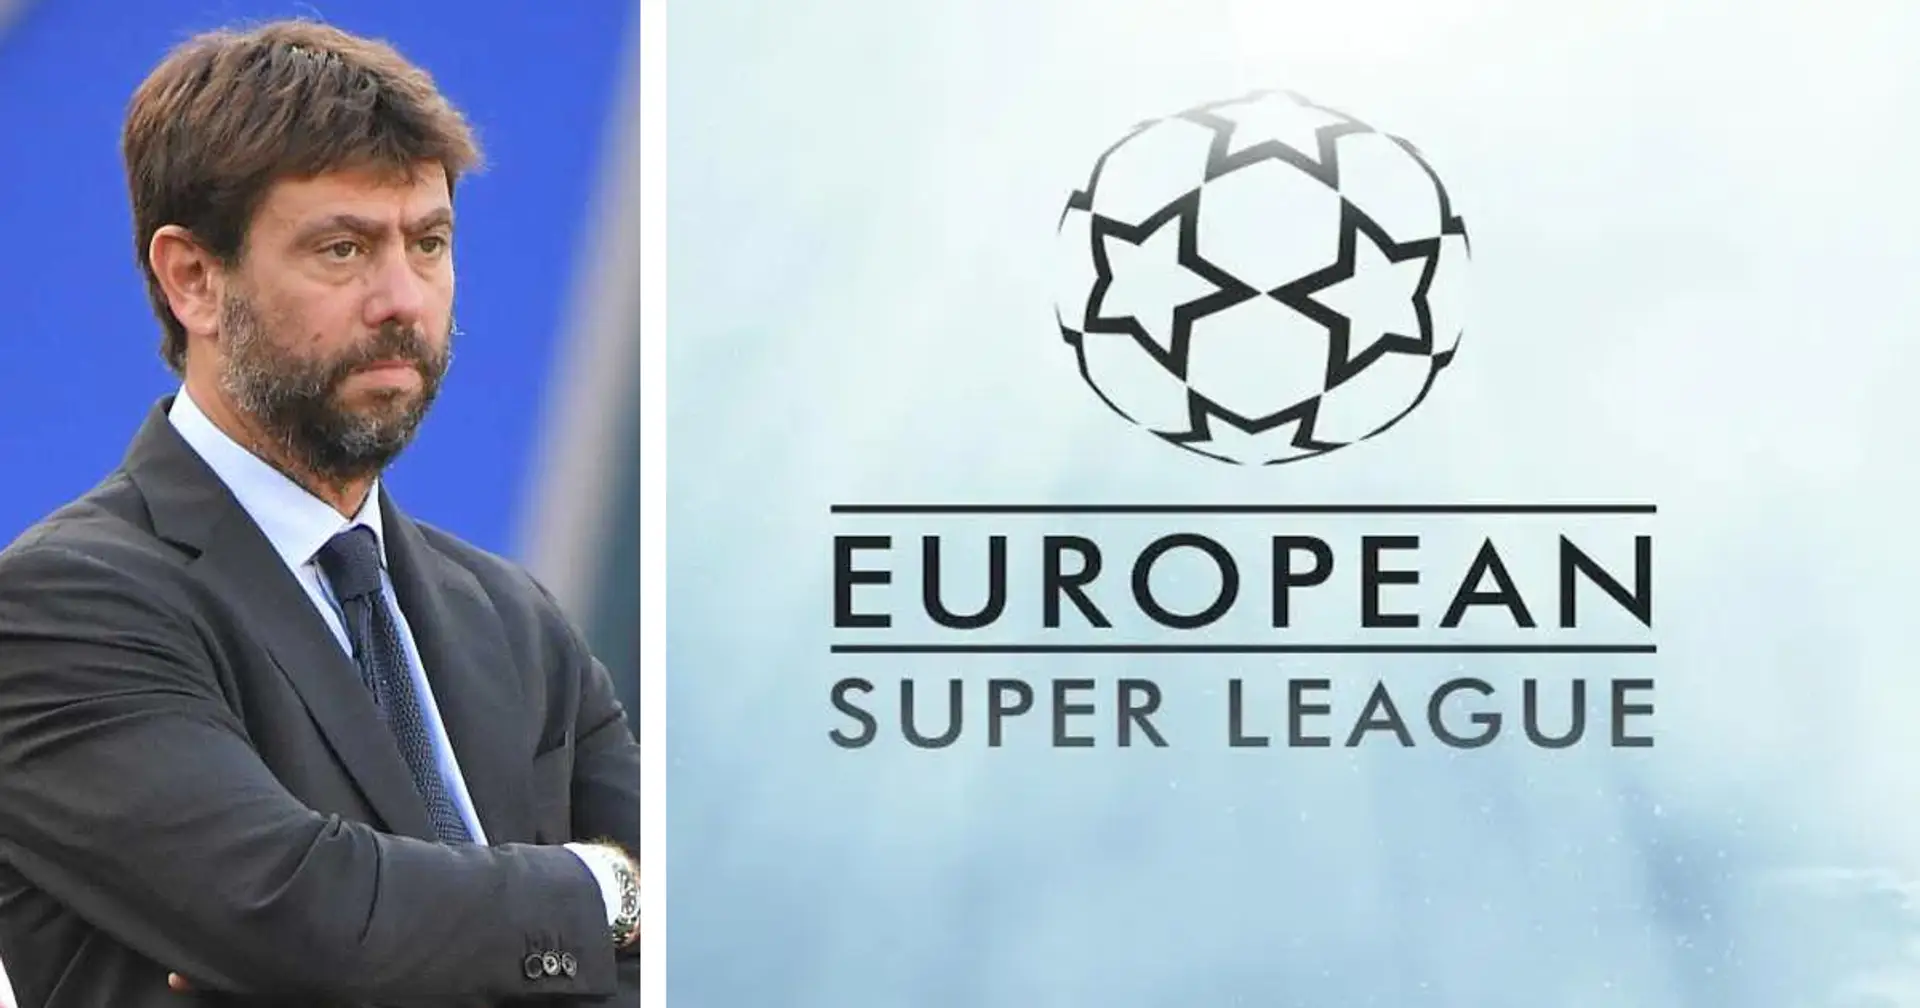 "Grazie Real e Barça, minacce per credere in un futuro migliore": Agnelli difende ancora la Superlega